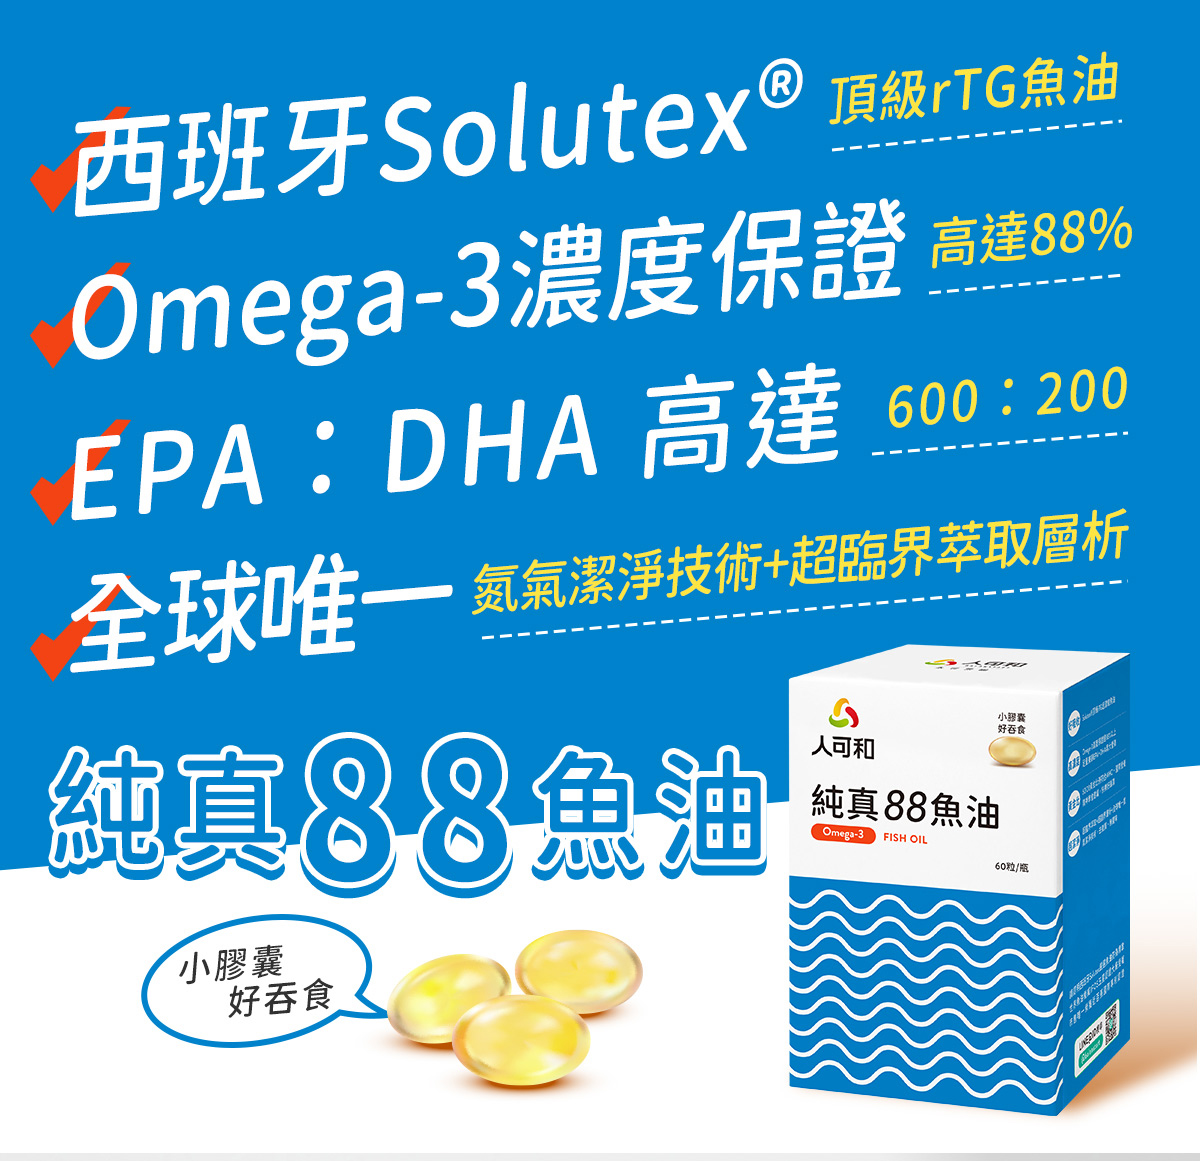 人可和純真88魚油｜西班牙Solutex® 頂級rTG魚油、Omega-3濃度保證 高達88%、EPA：DHA = 3：1 黃金比例、全球唯一 氮氣潔淨技術+超臨界萃取層析